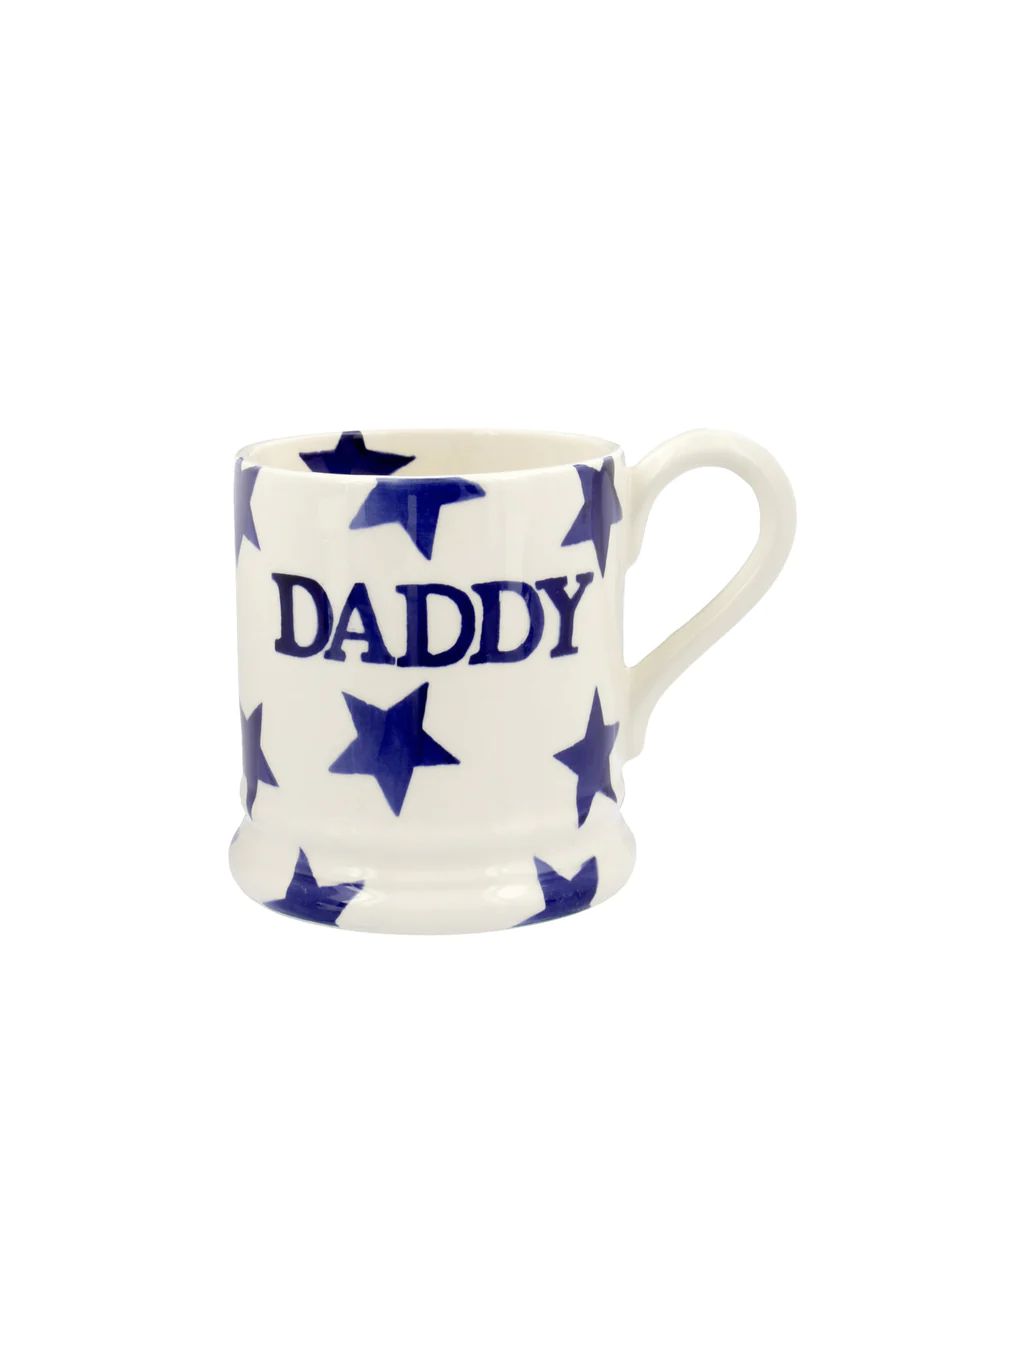 Emma Bridgewater Blue Star Boxed Daddy Half Pint Mug | Weston Table